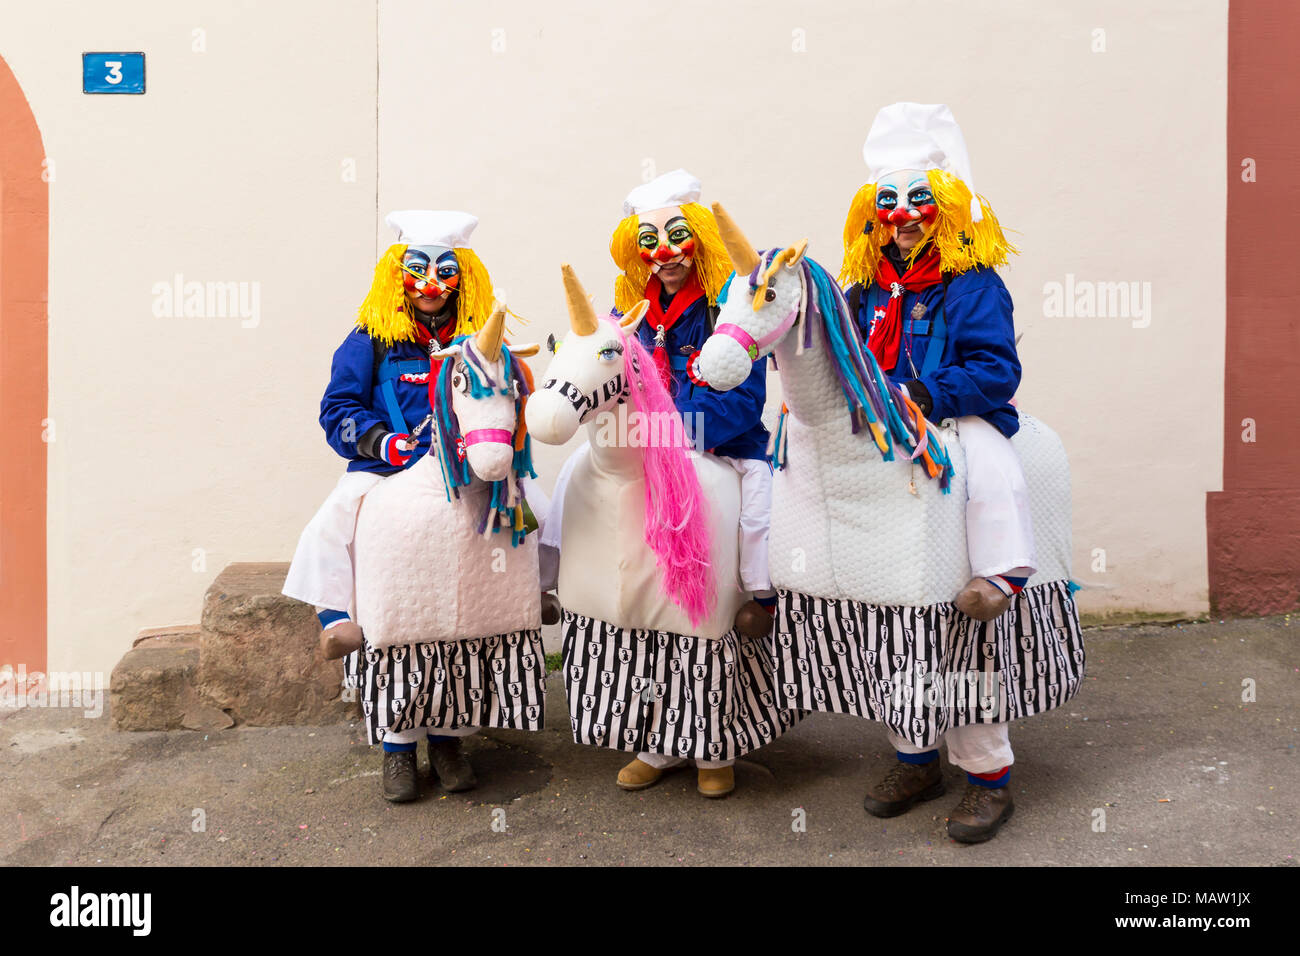 Carnaval de Bâle. Schluesselberg, Bâle, Suisse - 21 février 2018. Portrait de trois participants en costumes de chevaux mignon Banque D'Images